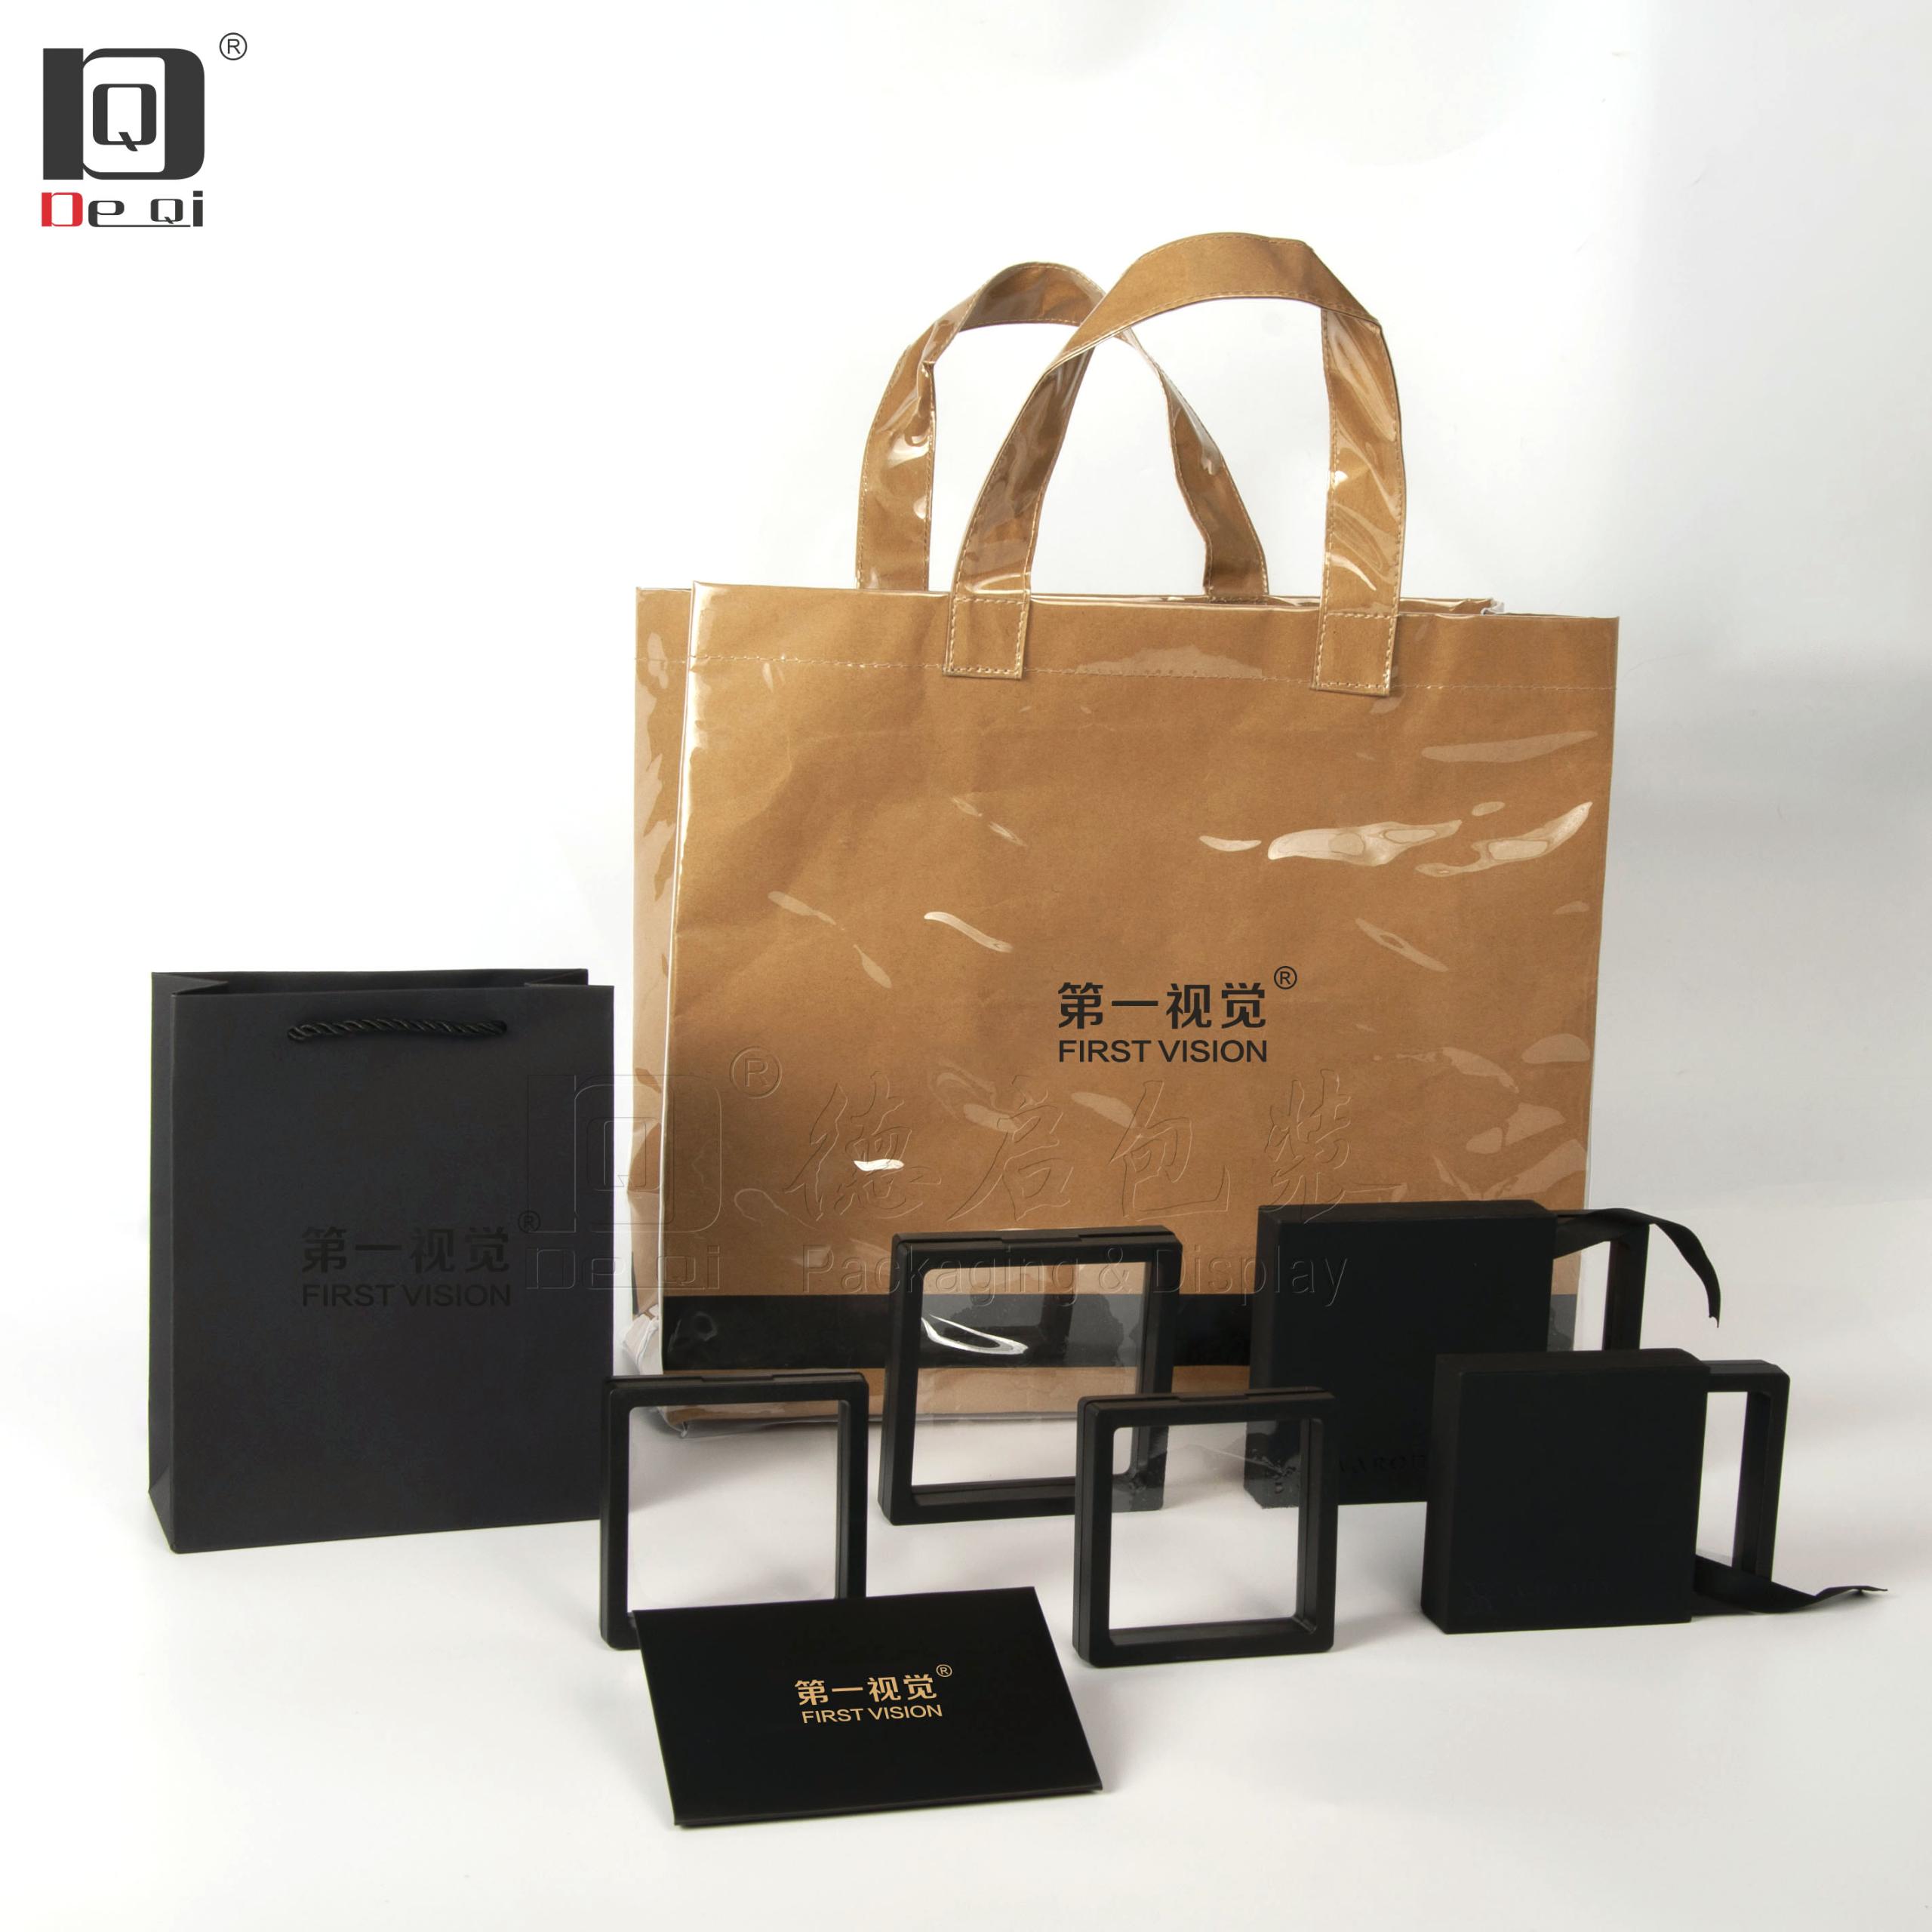 DEQI高档搭配珠宝首饰纸袋包装礼品盒品牌包装纸袋盒子系列